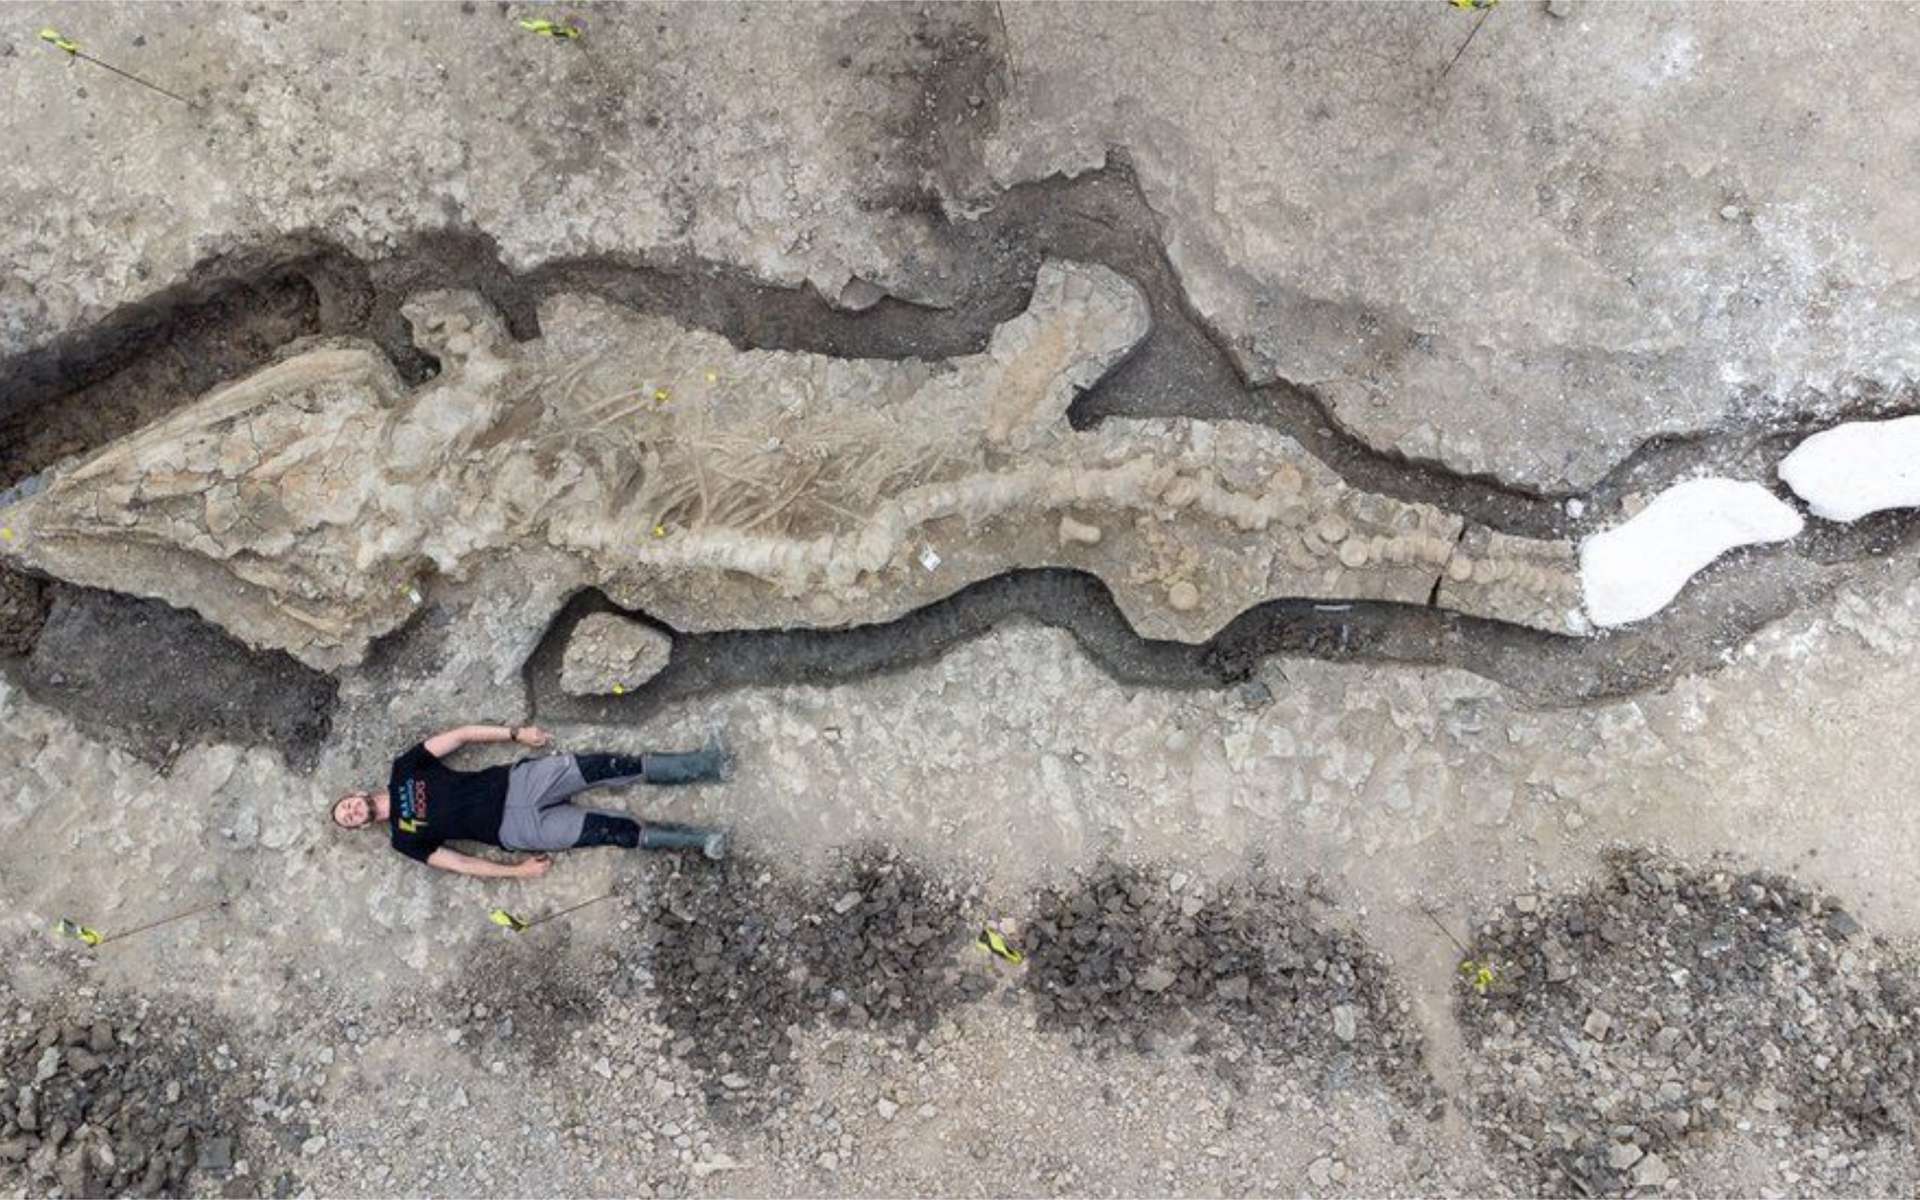 Surprenante découverte d'un « dragon des mers » géant au Royaume-Uni